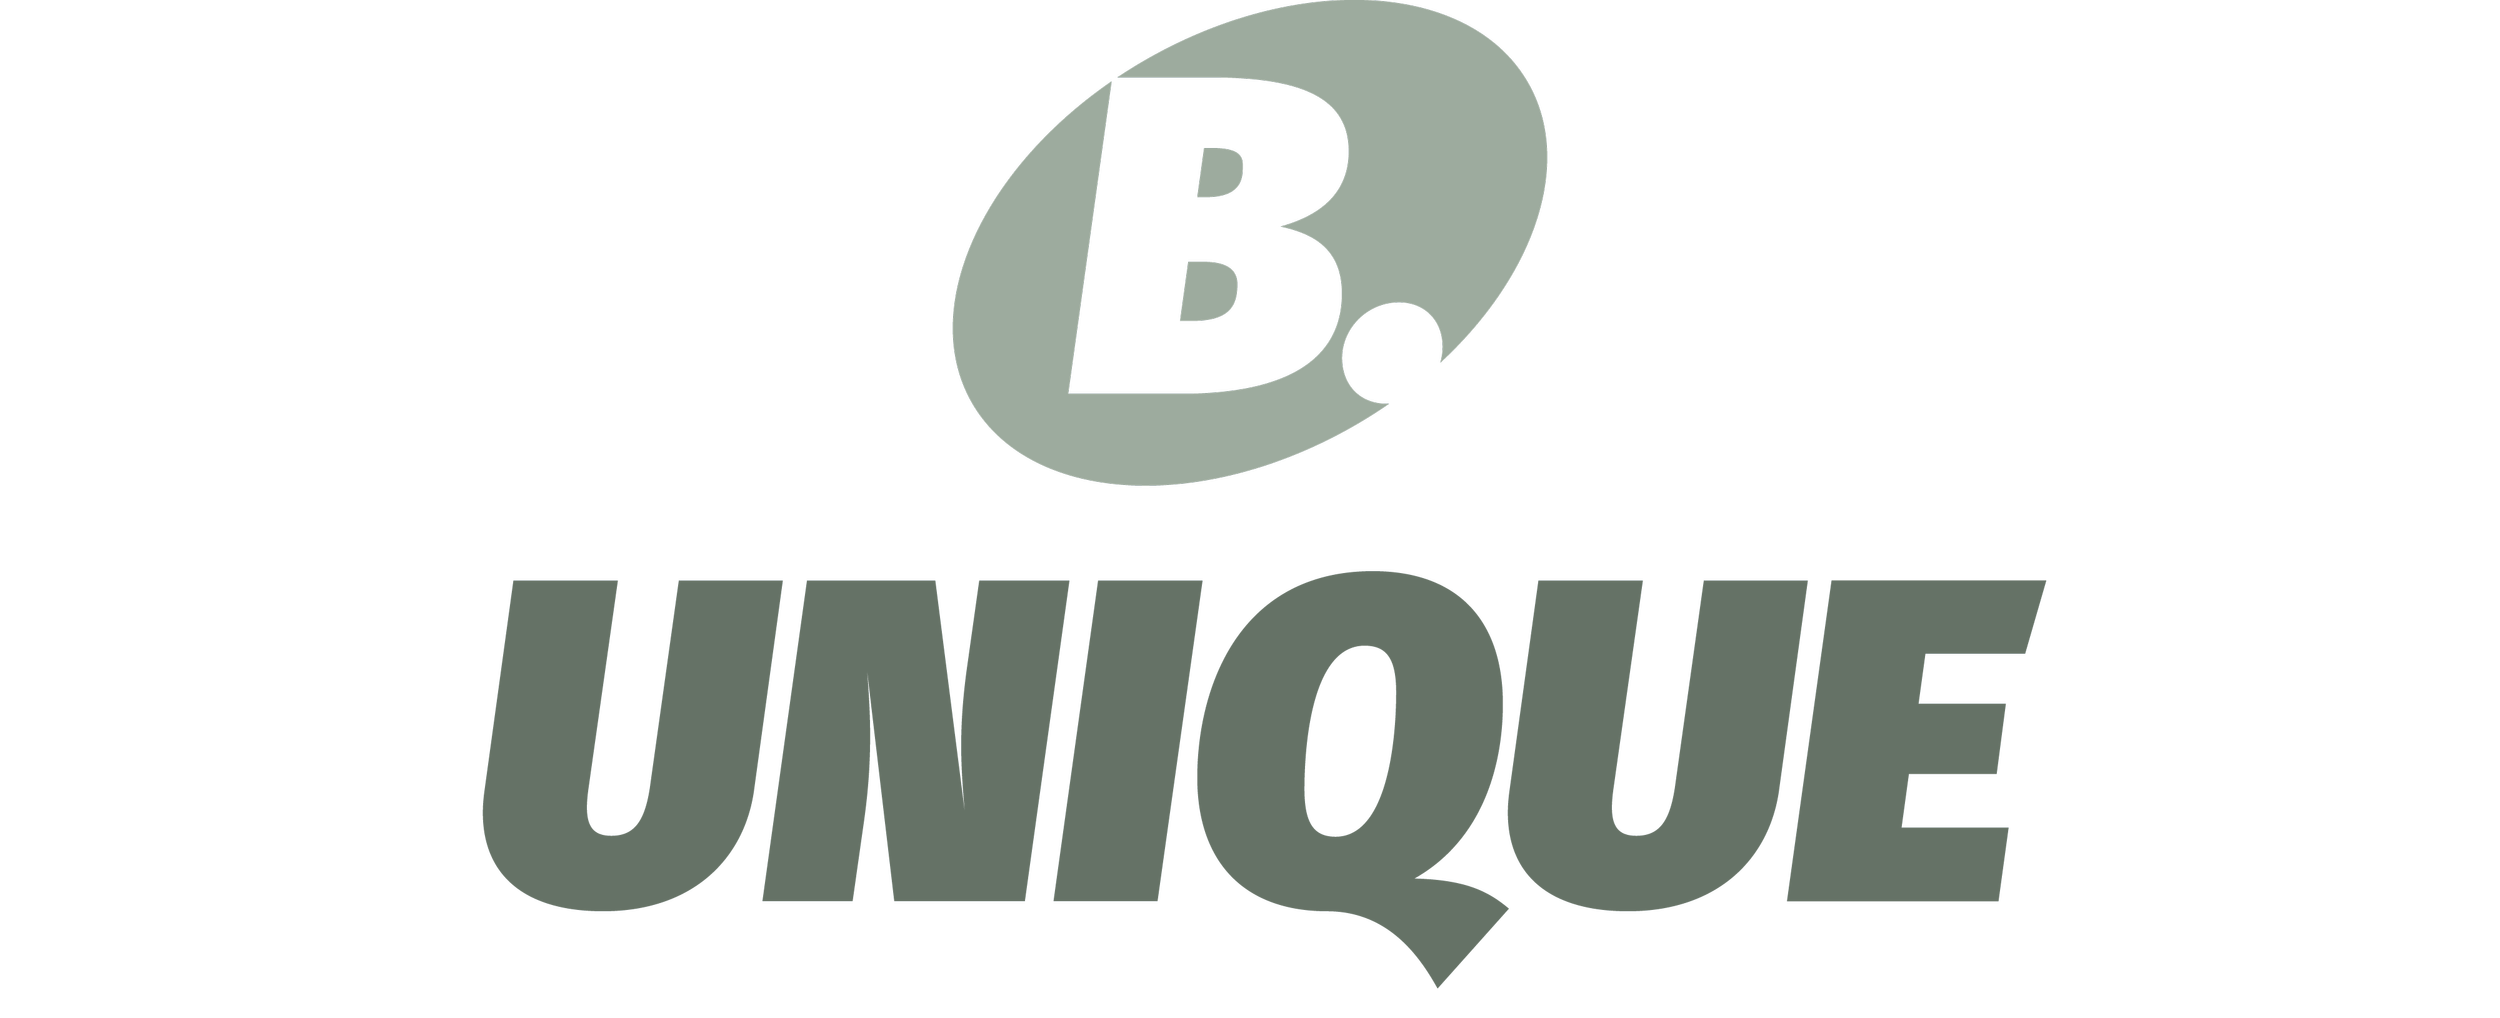 B. UNIQUE.png